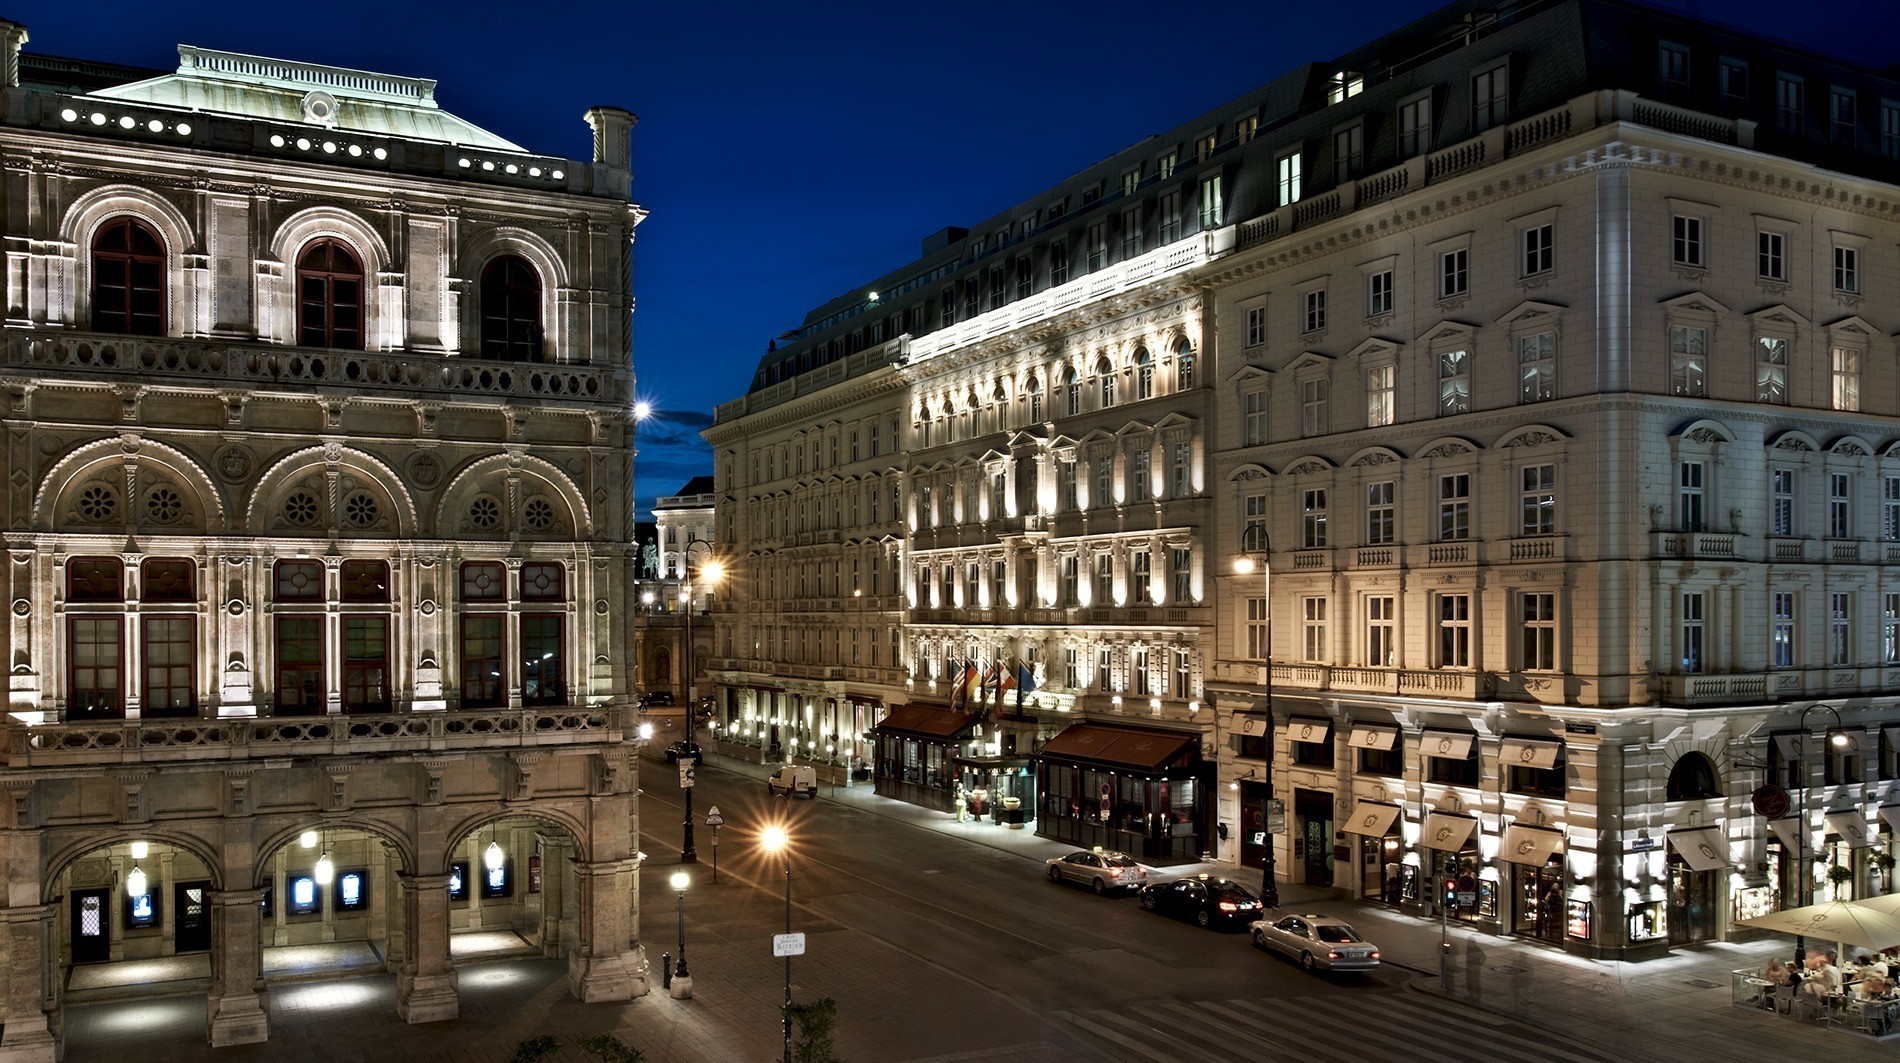 Δωμάτιο με θέα: Το αυτοκρατορικό παραμύθι της Βιέννης ζωντανεύει στη σουίτα Madame Butterfly του ιστορικού Hotel Sacher